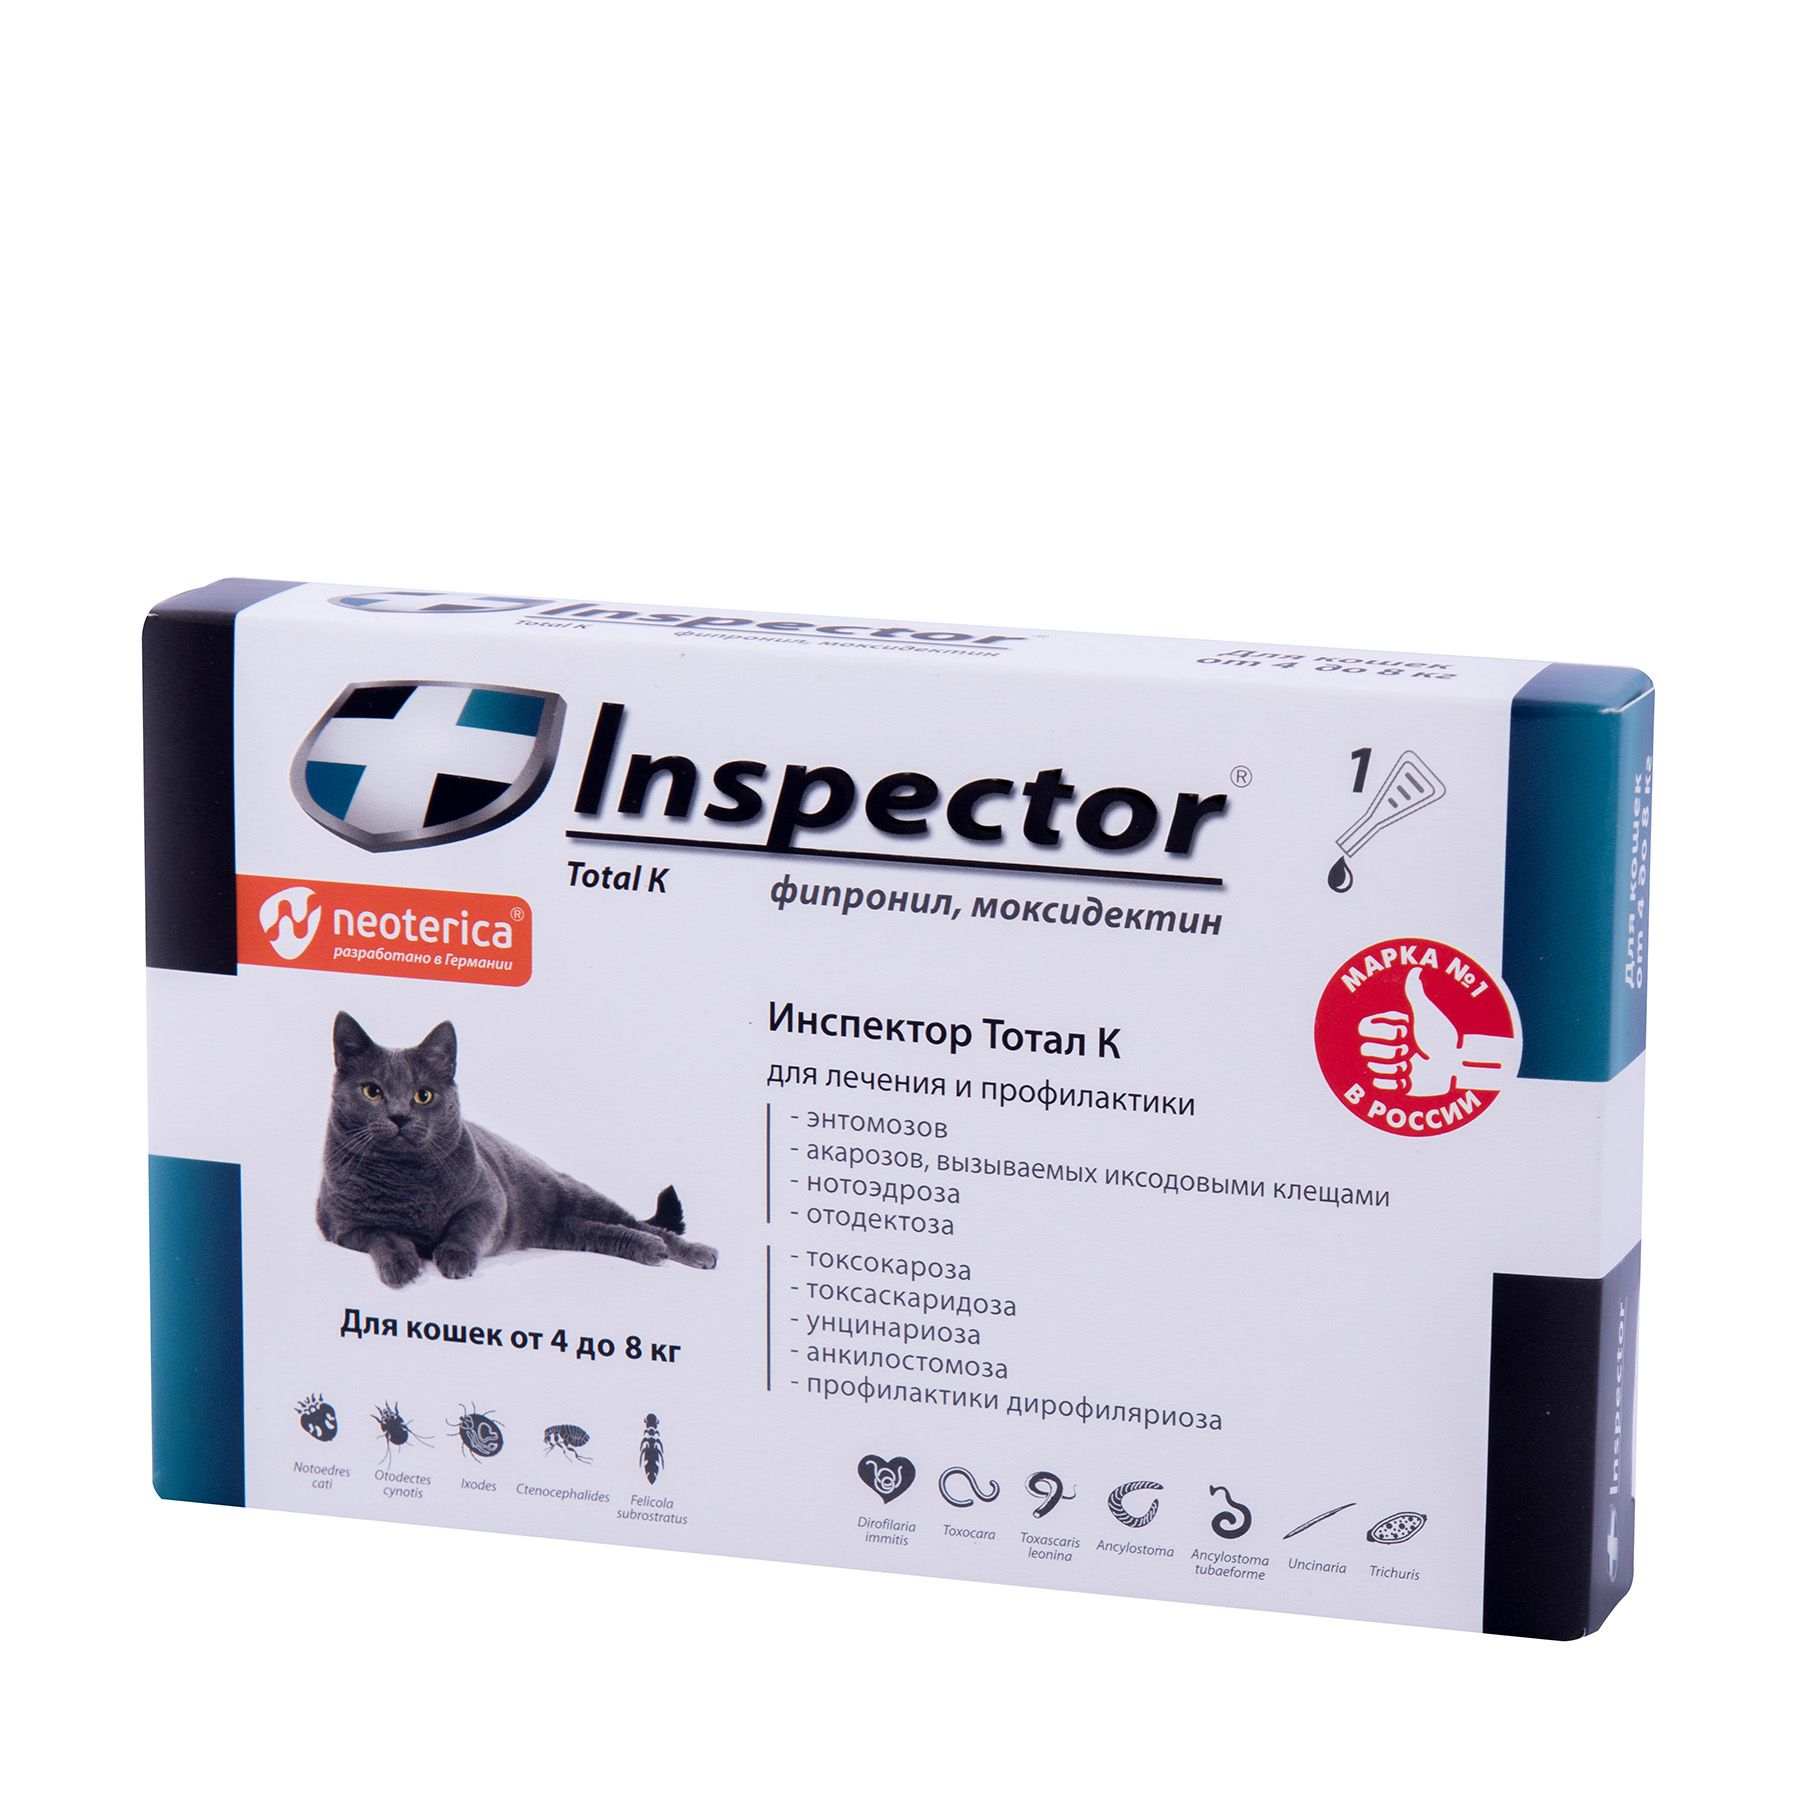 Капли инспектор для кошек купить. Инспектор total k для кошек от 4 до 8 кг. Инспектор капли тотал кошки. Inspector для кошек 4-8 кг. Инспектор от 1 до 4 кг для кошек.